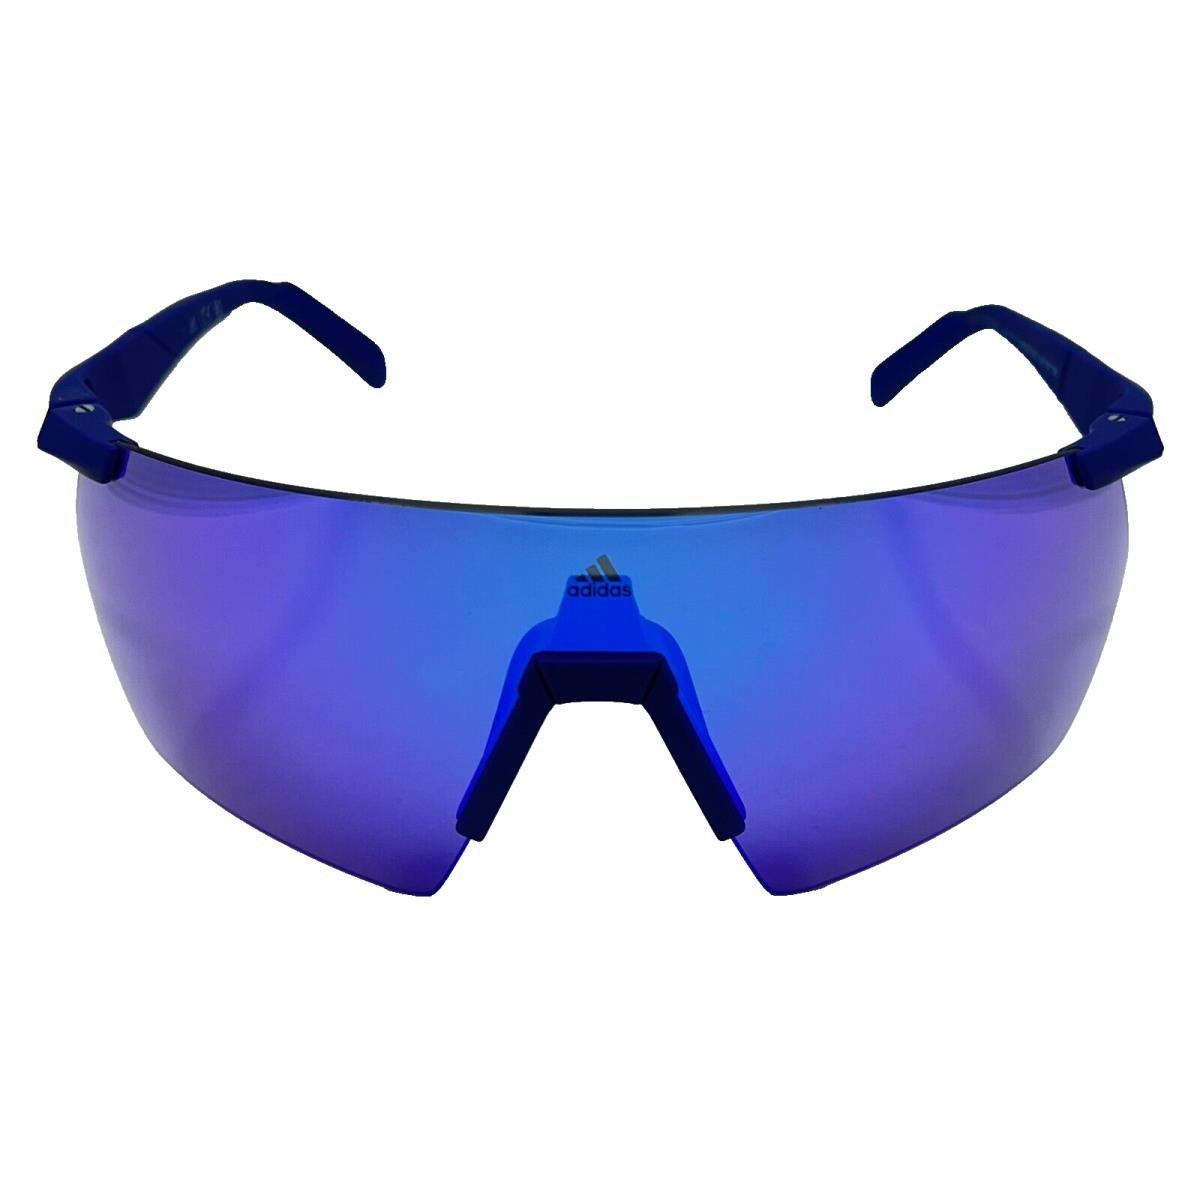 Adidas Sport SP0062 92Z 138 - Blue - Sunglasses Case Lens